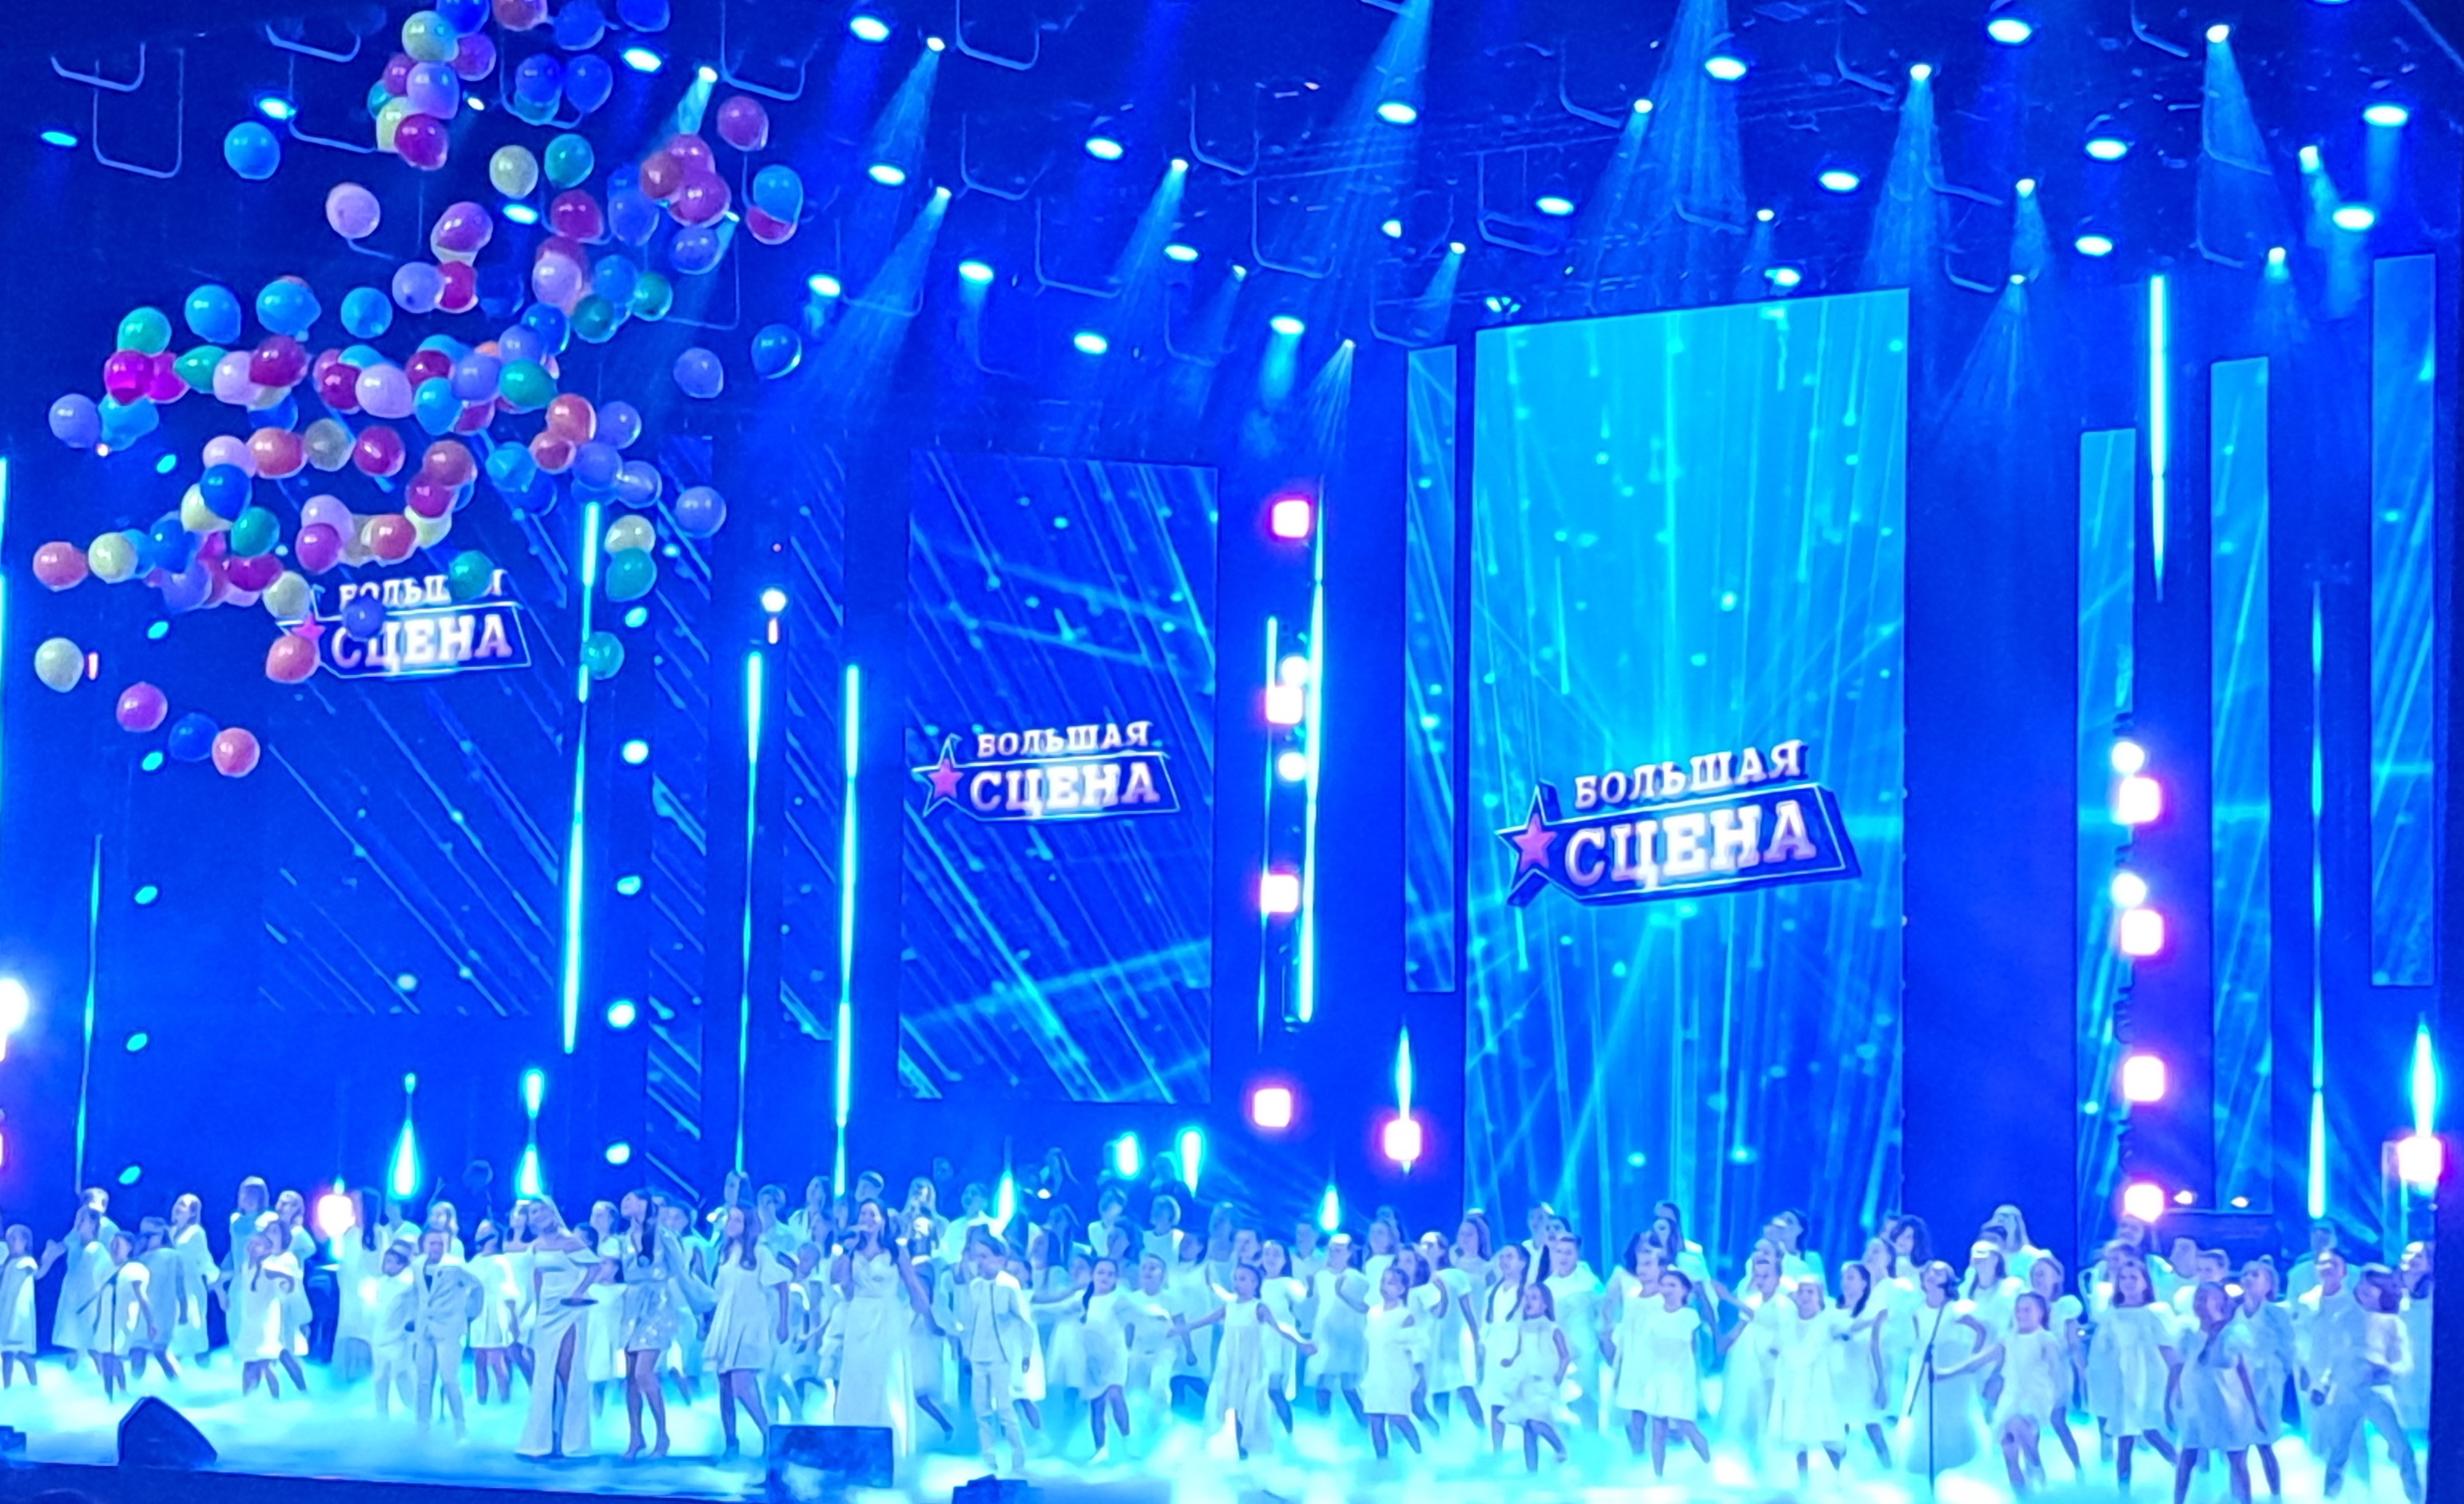 Гала - концерт  победителей проекта "Большая сцена"